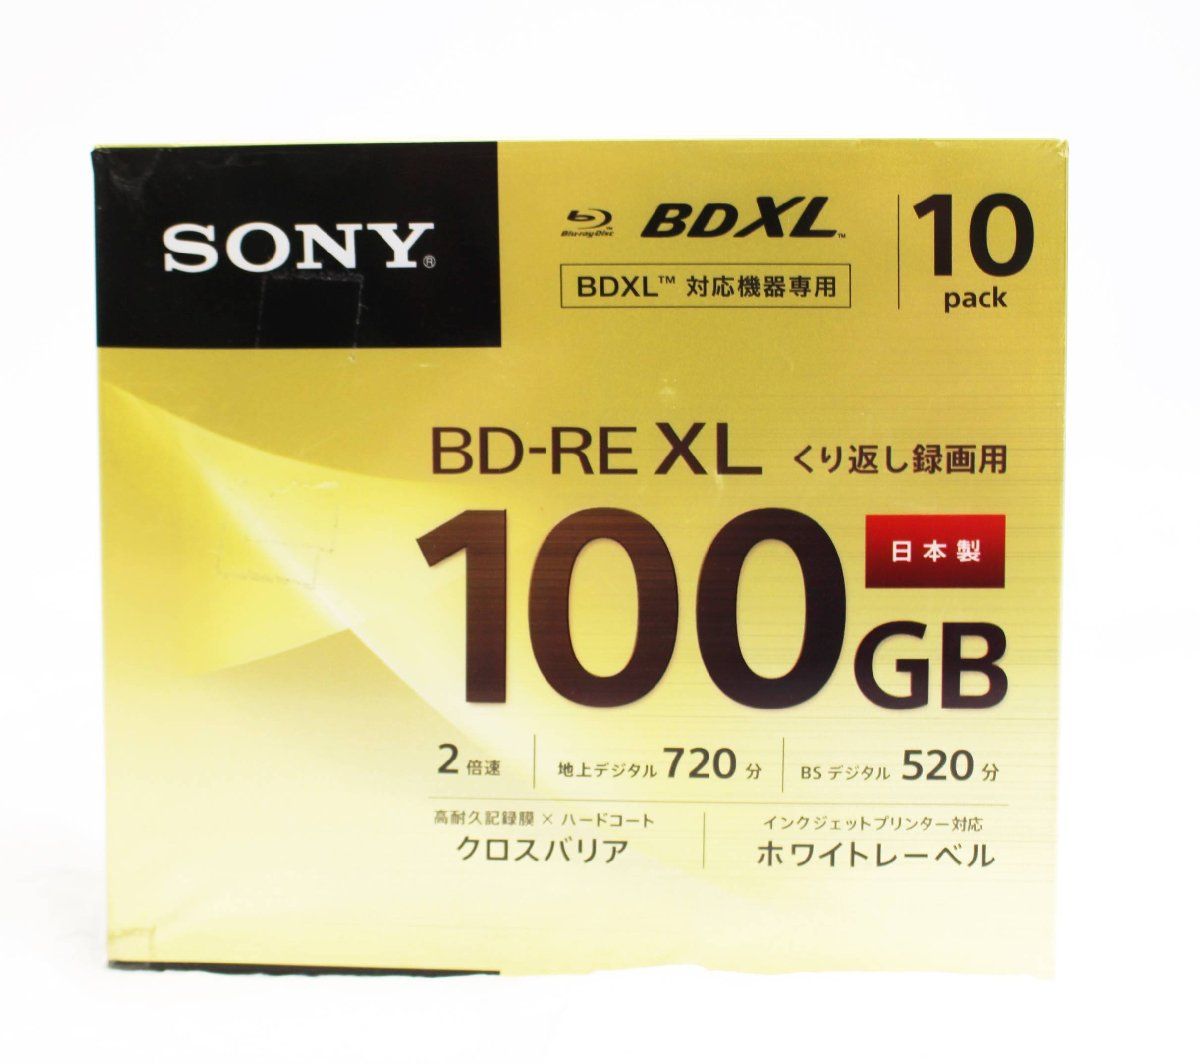 SONY BD-RE XL くり返し録画用ブルーレイディスク 100GB 10パック